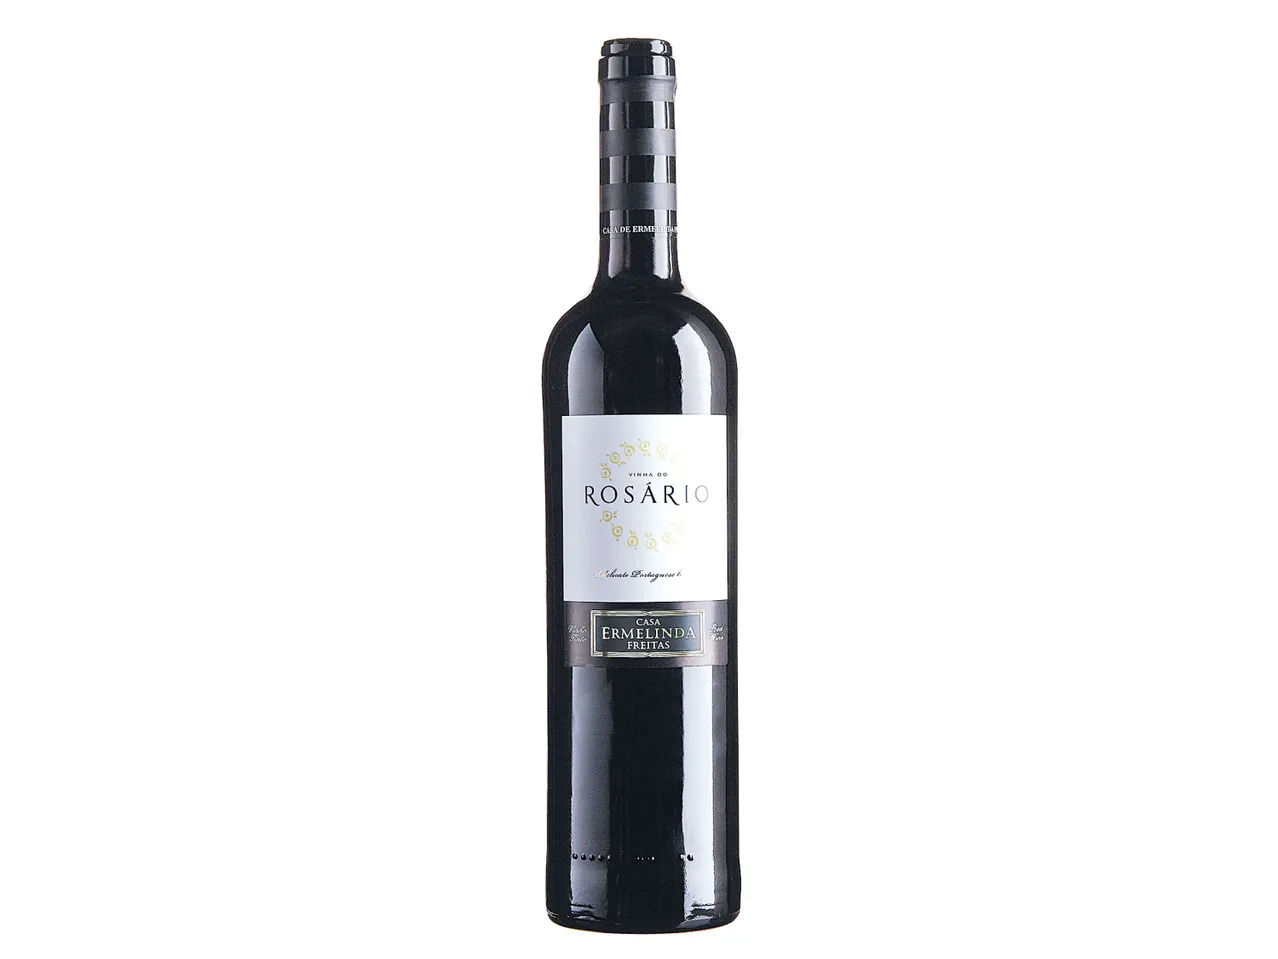 Ver empliada: Vinha Rosário® Vinho Tinto Regional Peninsula de Setubal - Imagem 1